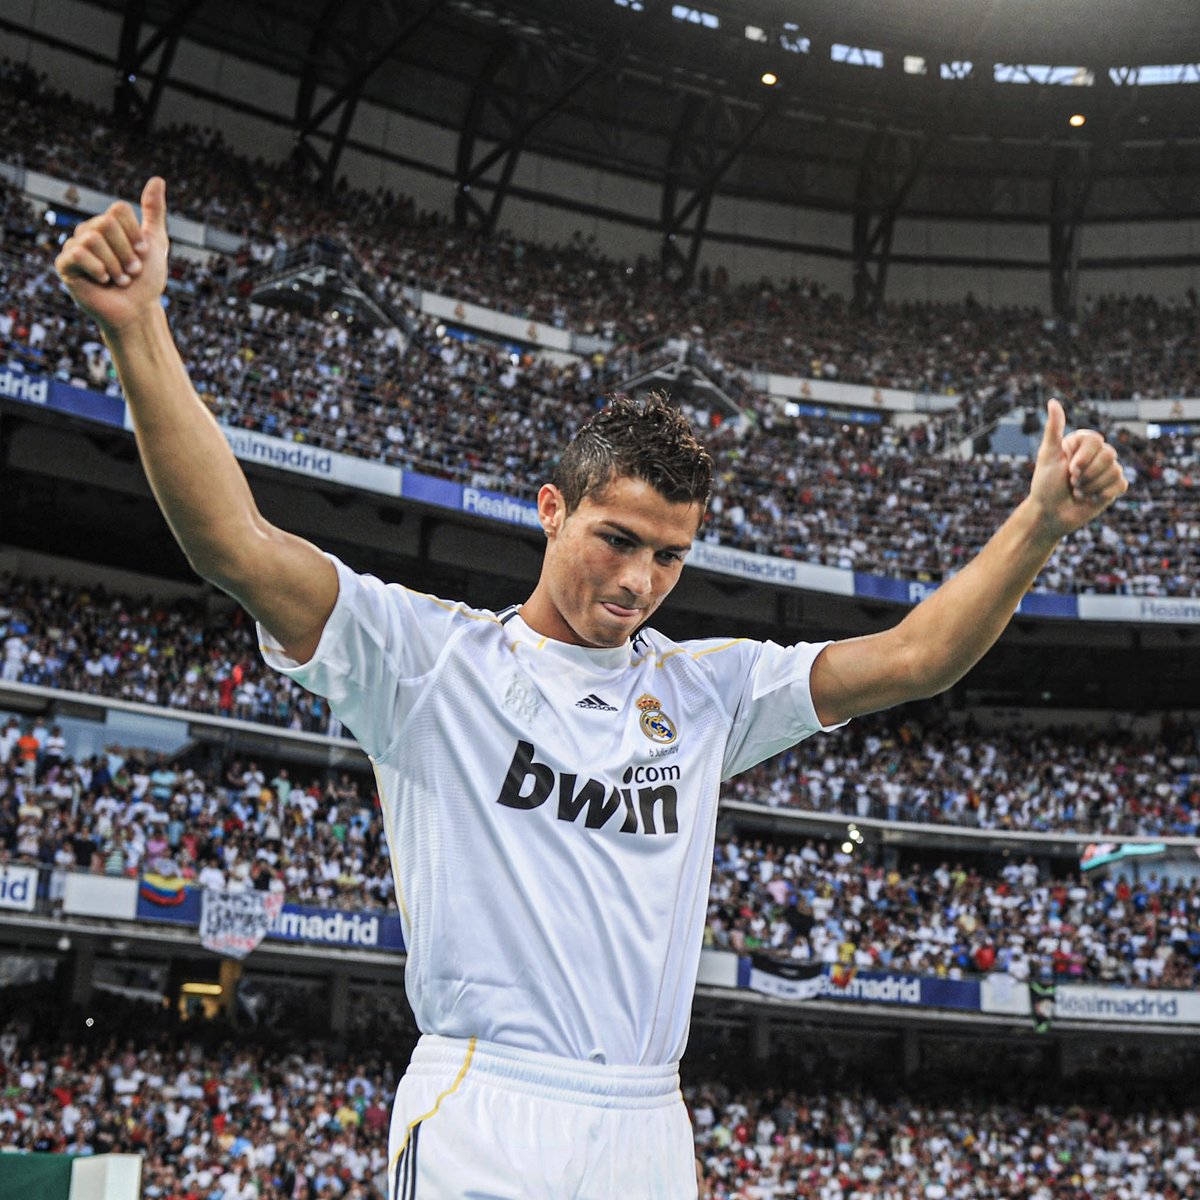 Mười kỷ lục vĩ đại nhất bị phá vỡ bởi Cristiano Ronaldo cho câu lạc bộ và quốc gia.